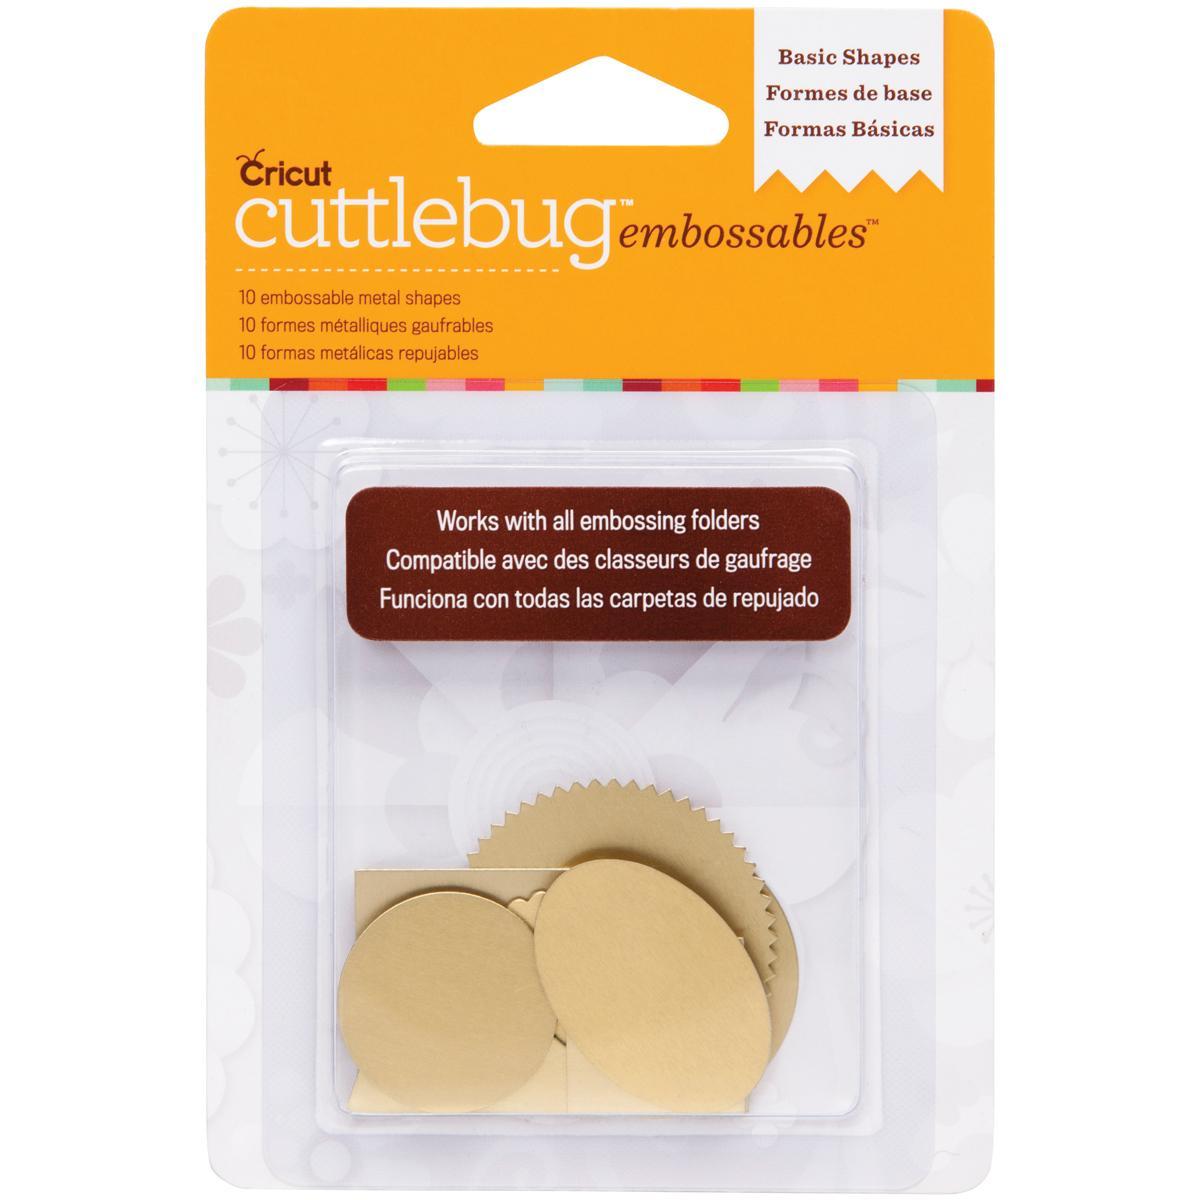 Cuttlebug Embossables Metal Shapes 10/pkg  Basic Shapes, Gold